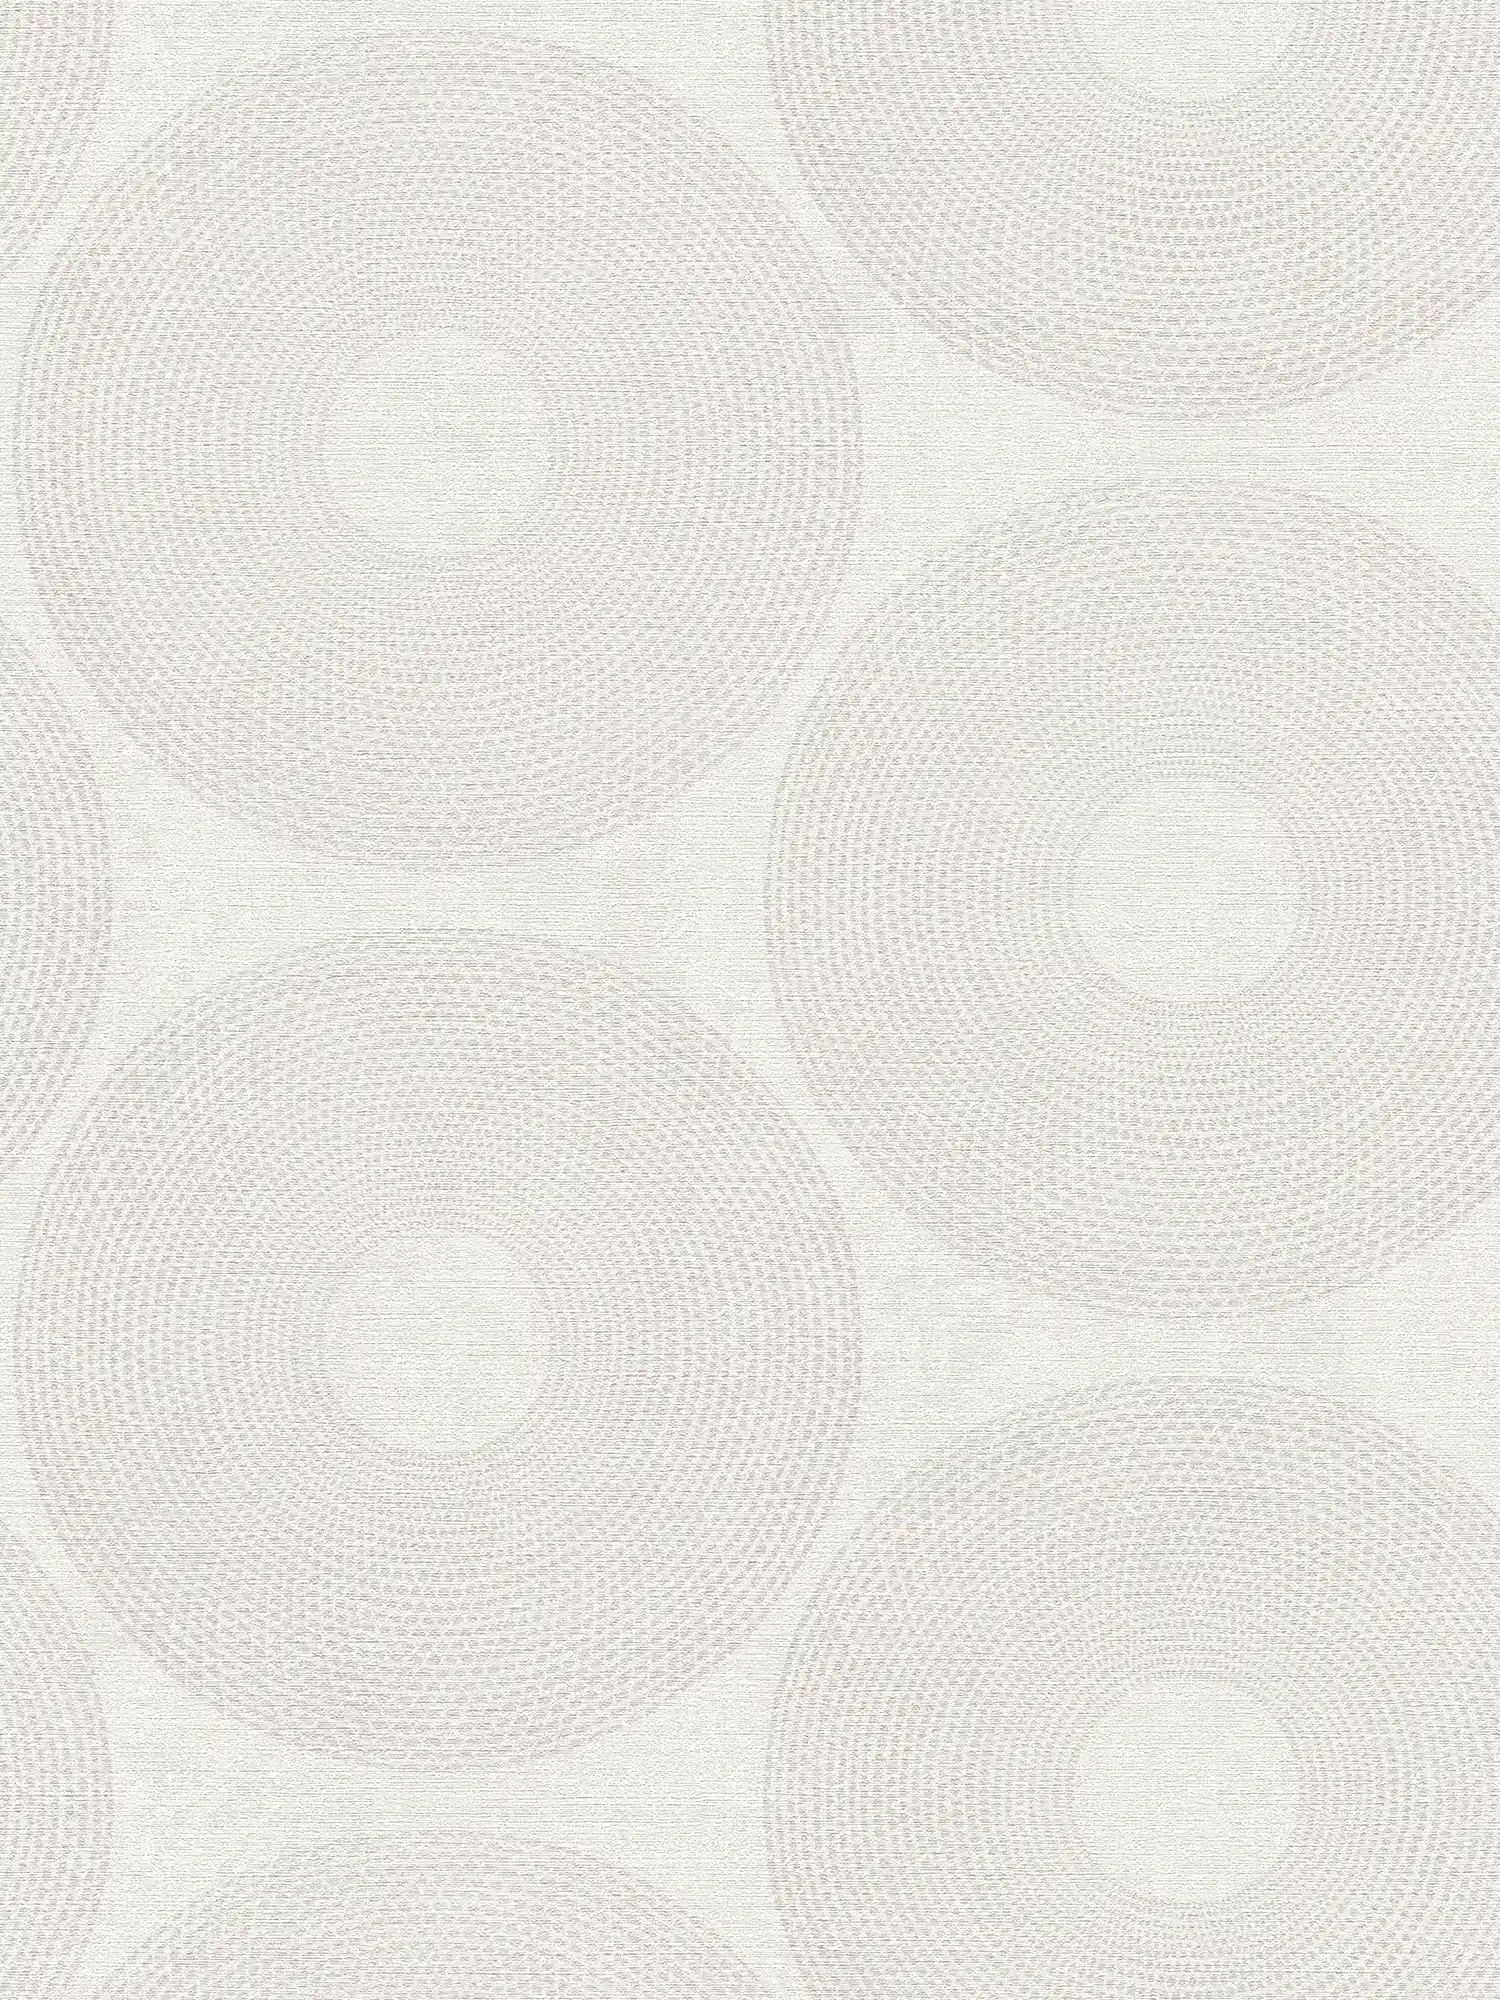 Ethno behang cirkels met structuurdesign - grijs
